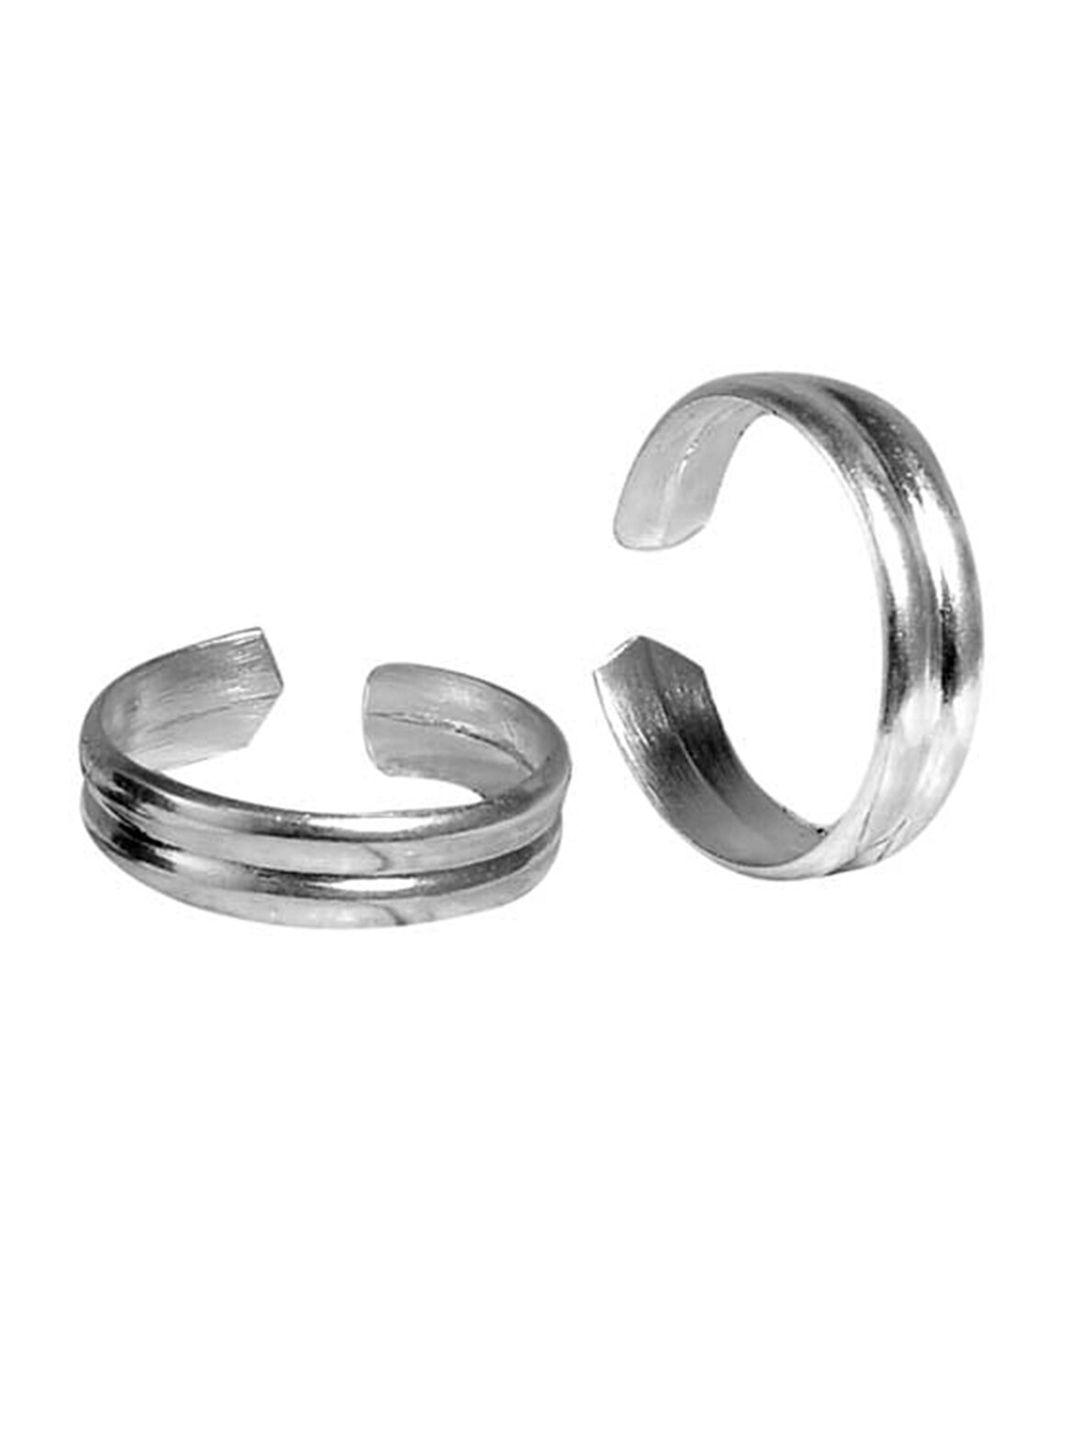 abhooshan 92.5 sterling silver adjustable toe rings